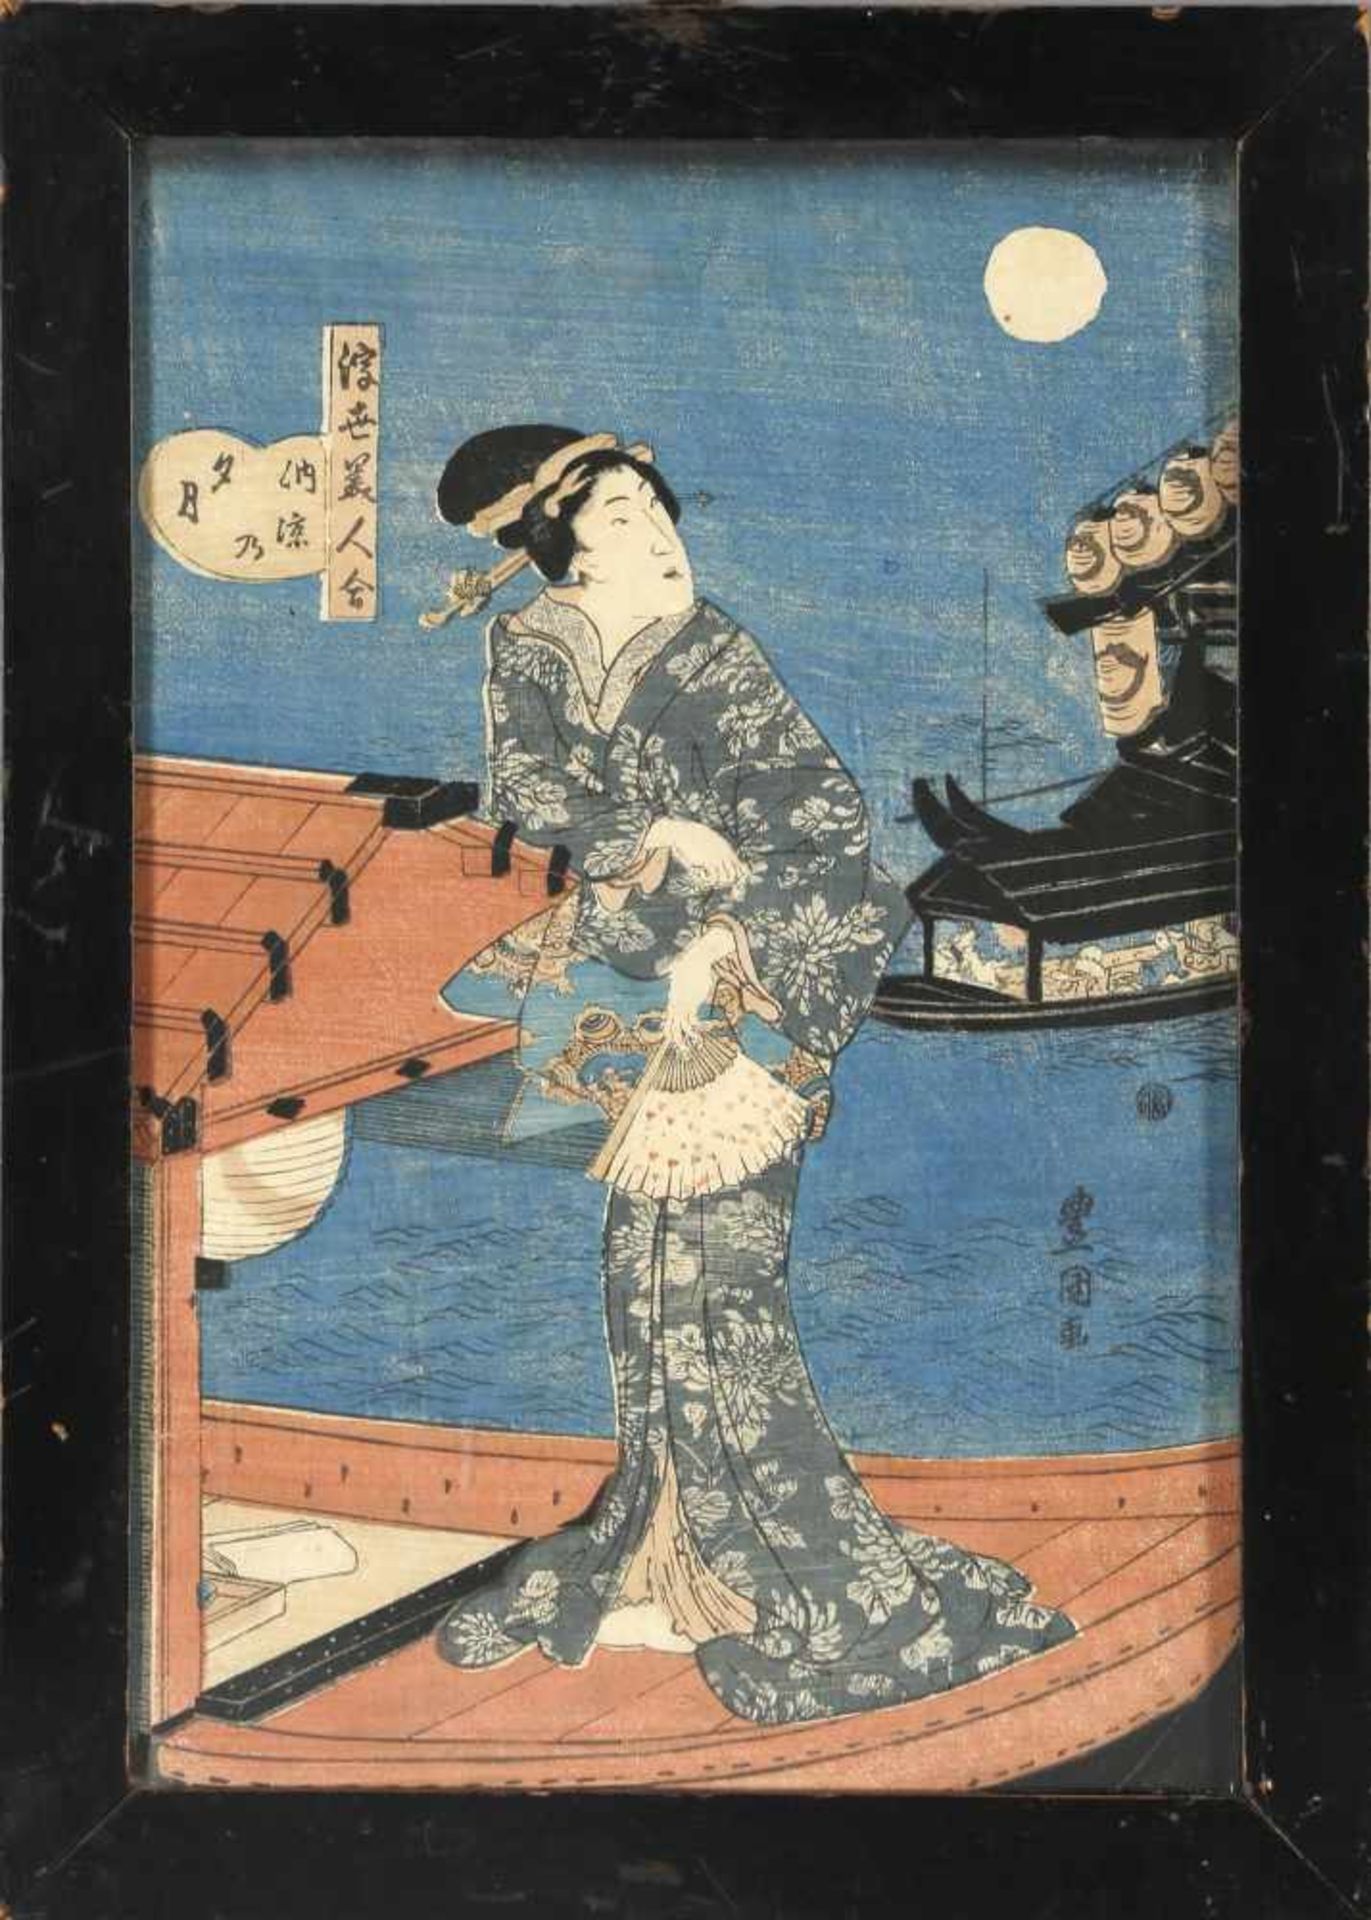 Holzschnitt Japan, 19. Jh.Darstellung einer Dame mit Fächer auf einem Boot, mehrfarbig auf Papier,